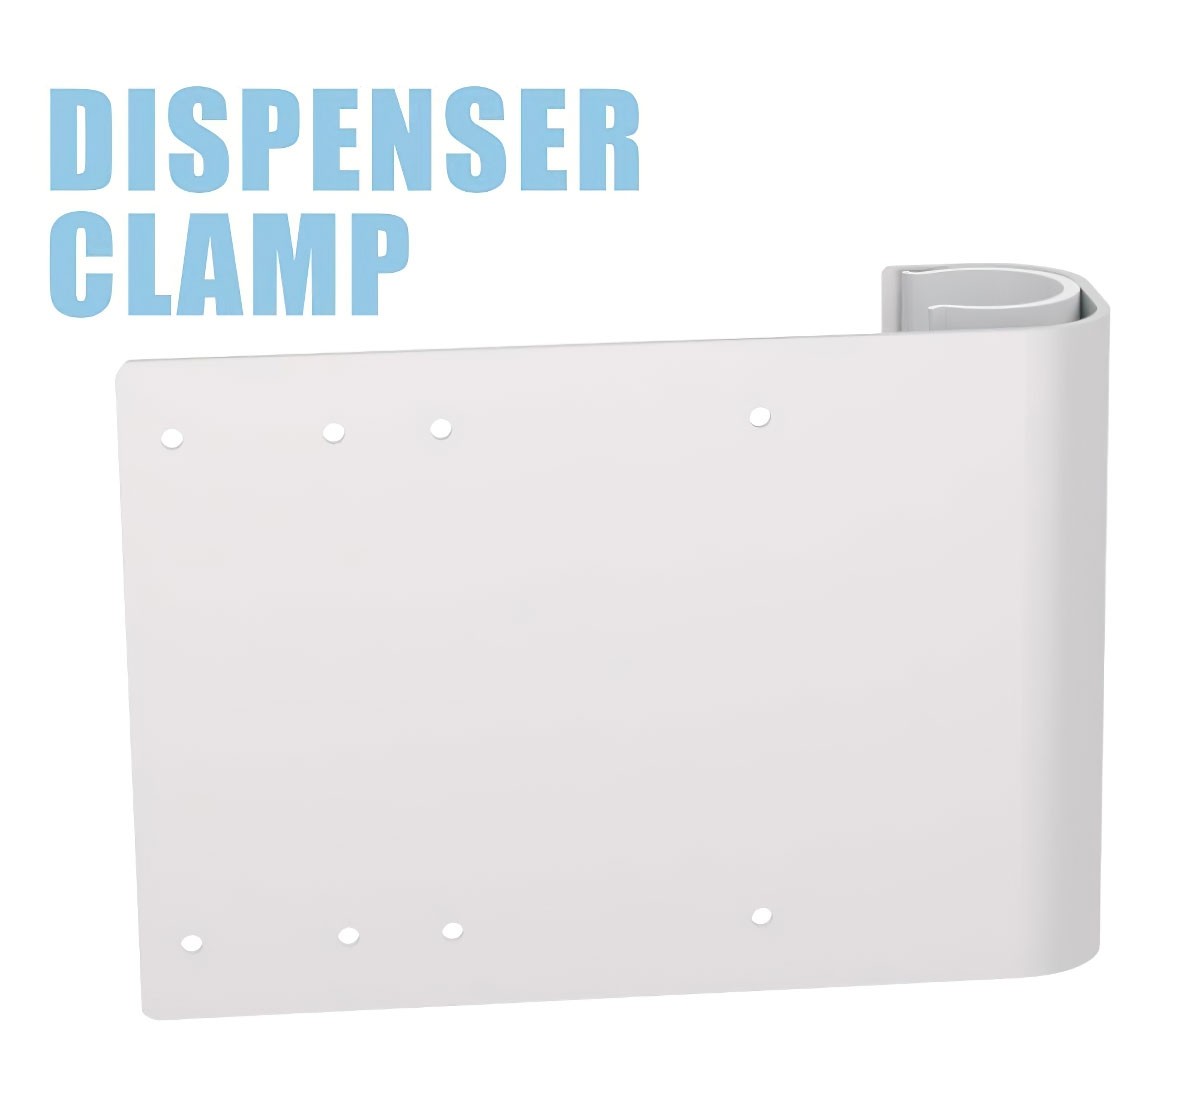 Clamp On Hand Sanitizer Dispenser